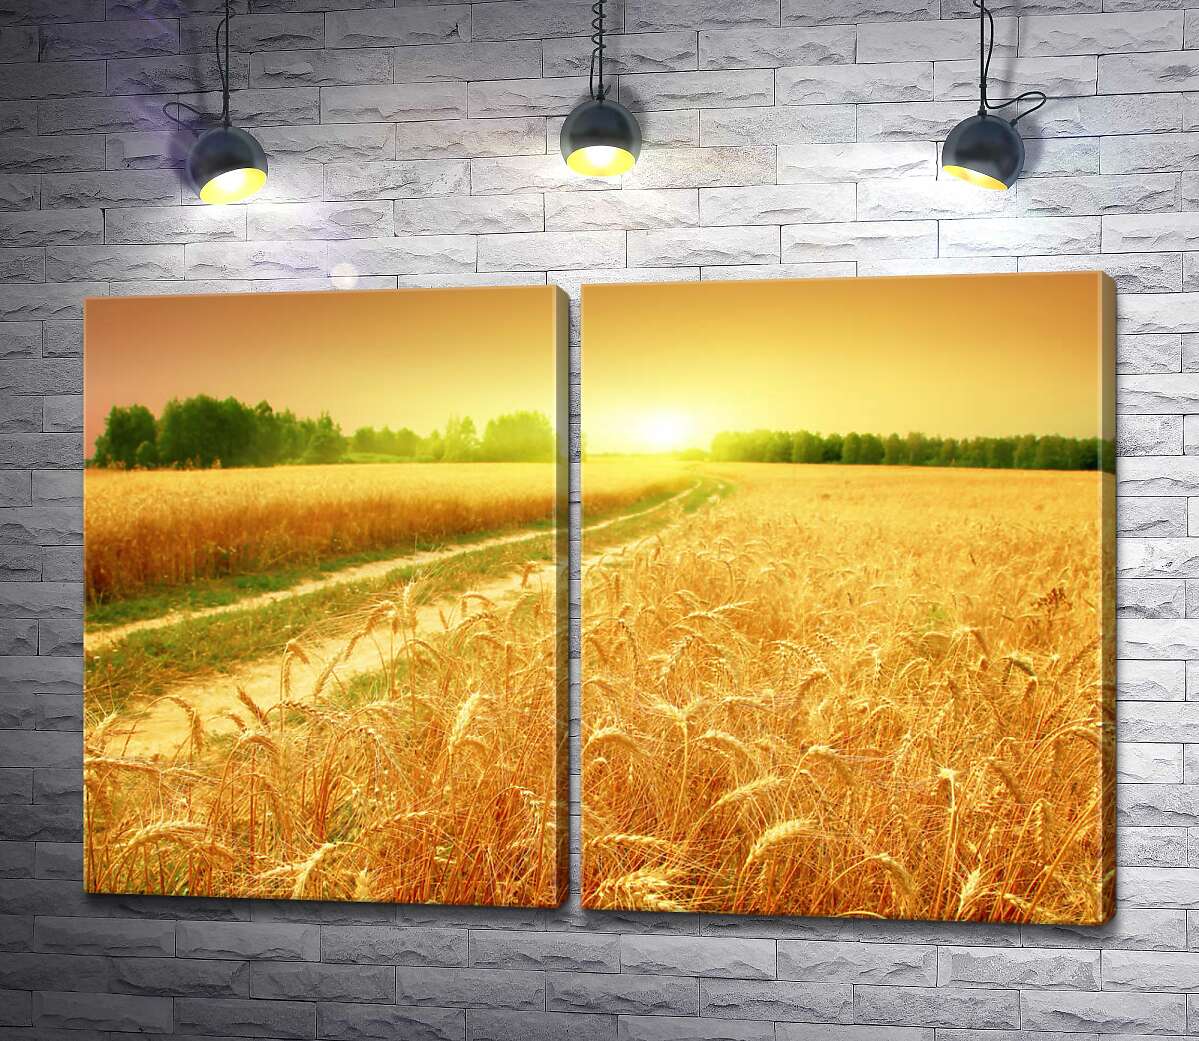 модульна картина Польова дорога зеленою стрічкою проходить між жовтого колосся пшениці